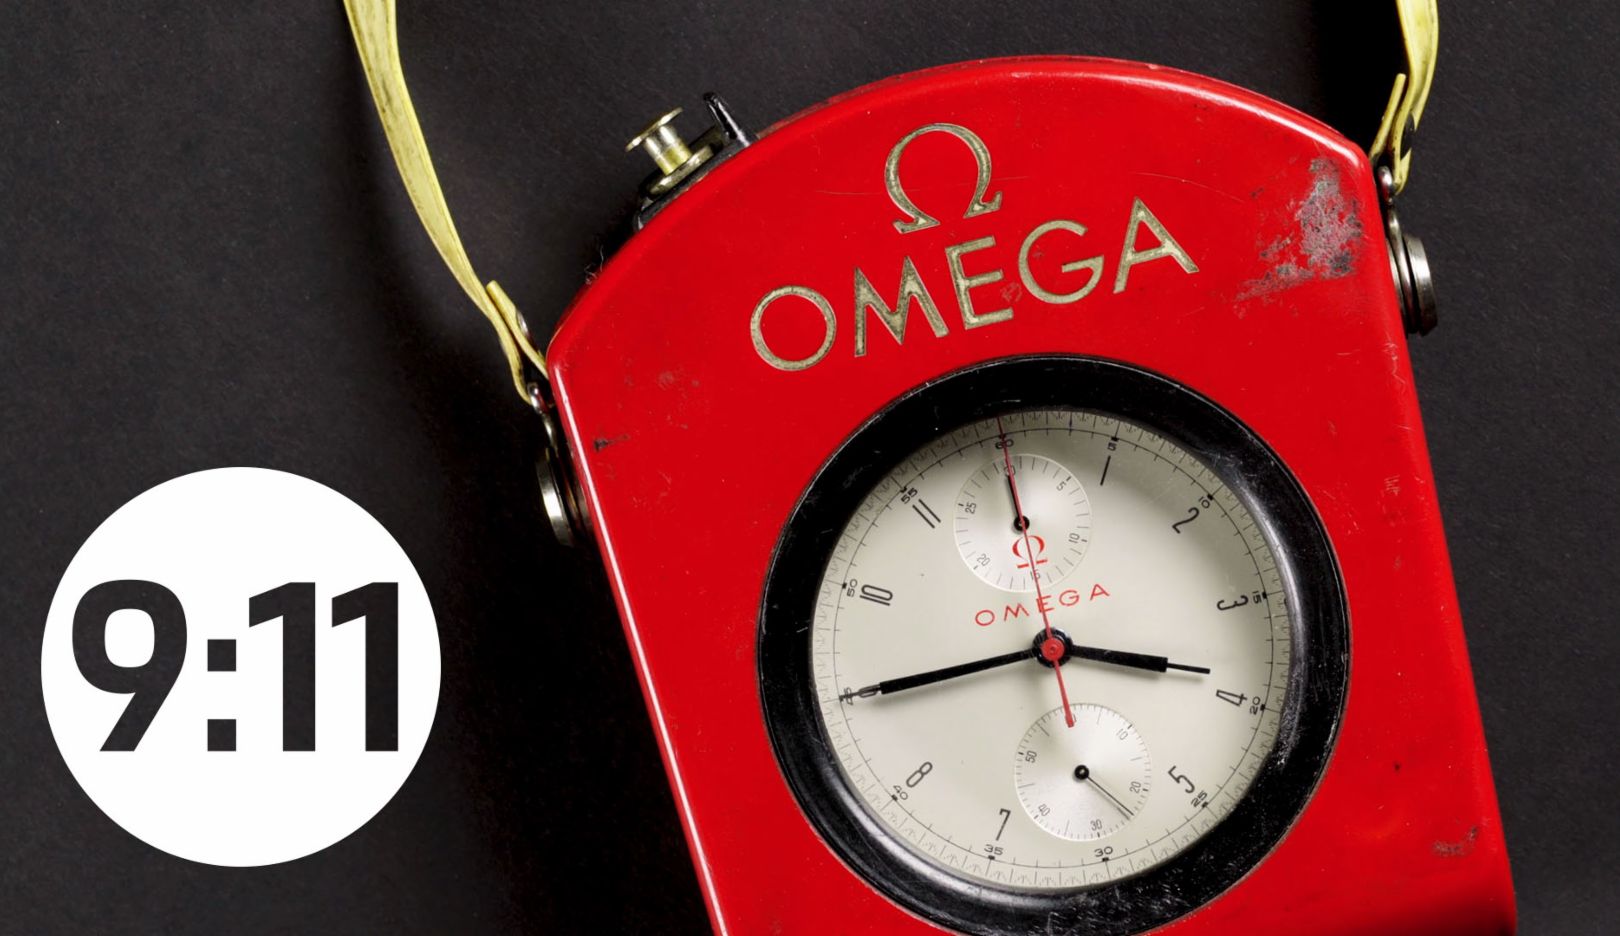 Omega stopwatch, 9:11 magazine, episode 10, 2018, Porsche AG